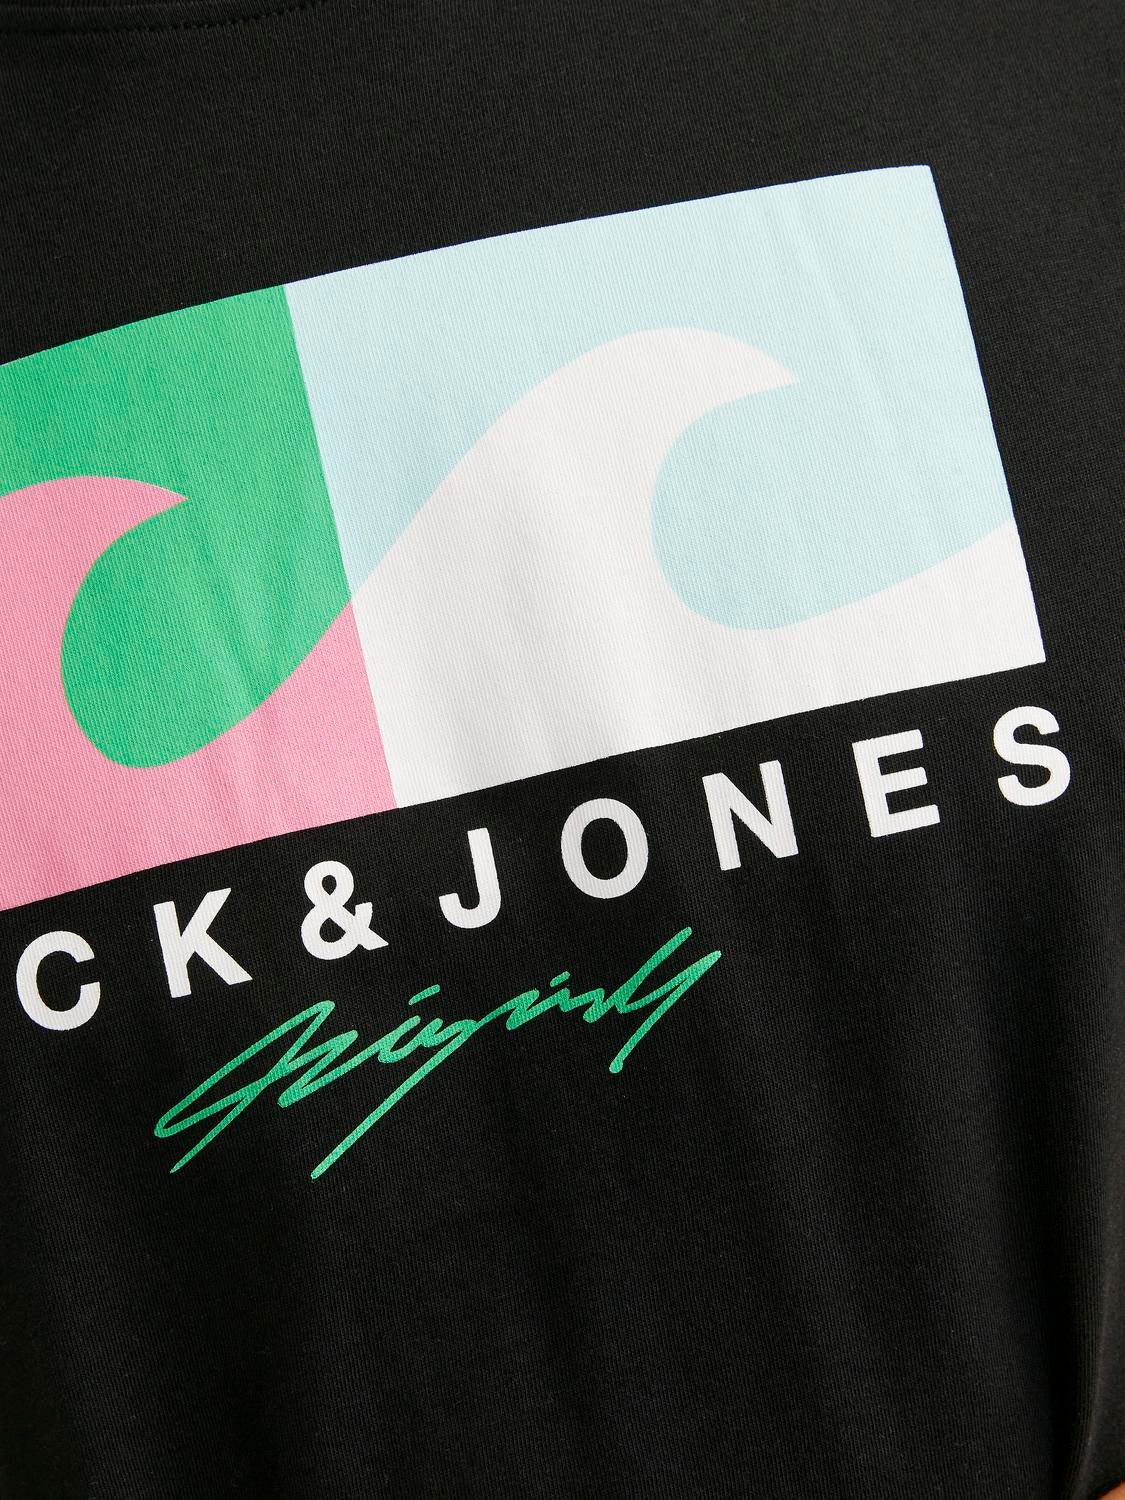 Jack & Jones Nyomott mintás Környak Trikó -Black - 12255038